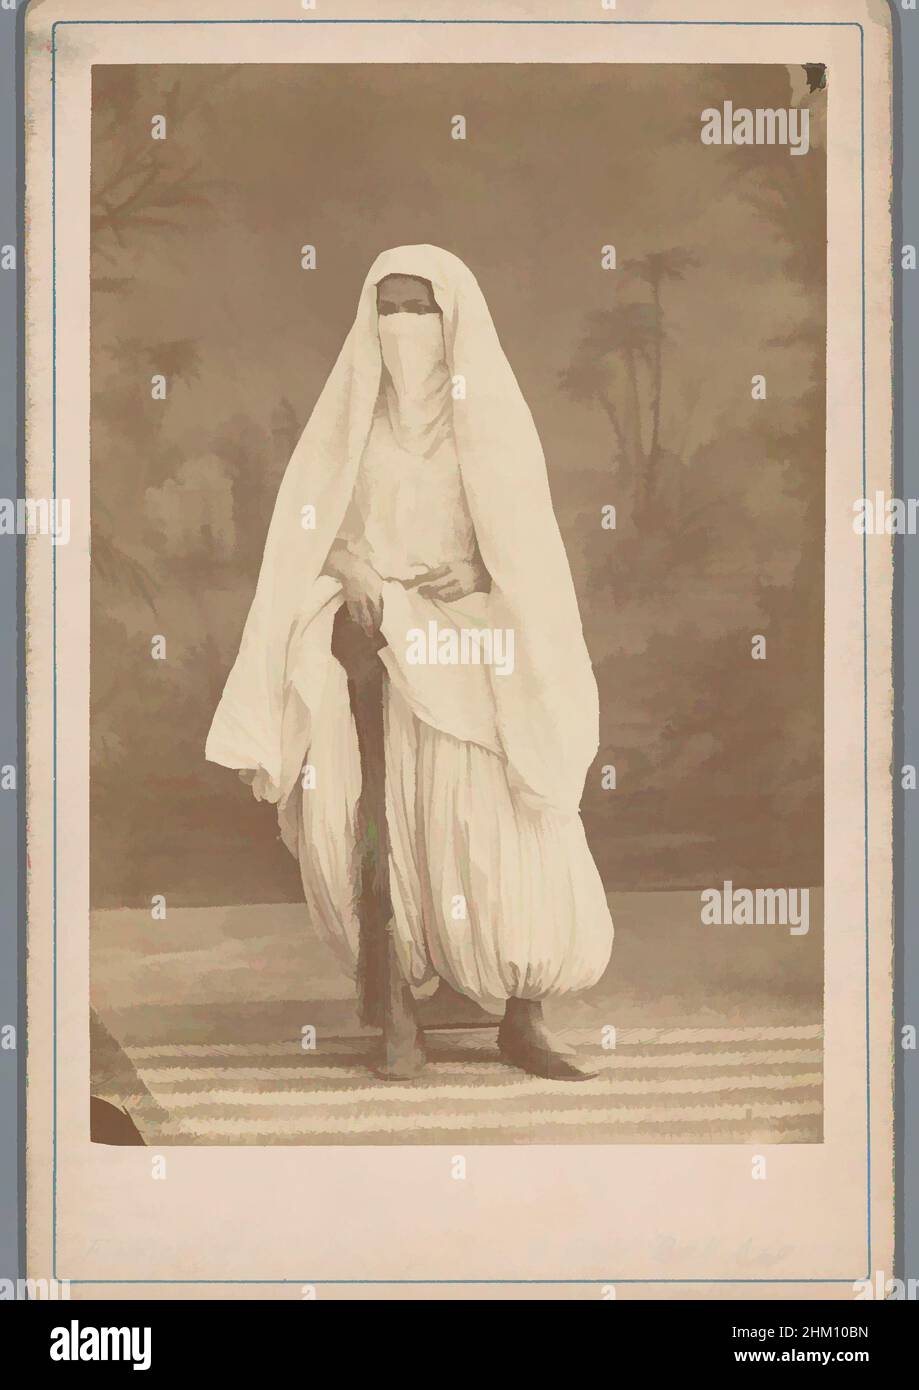 Sarouel algerien Banque de photographies et d'images à haute résolution -  Alamy